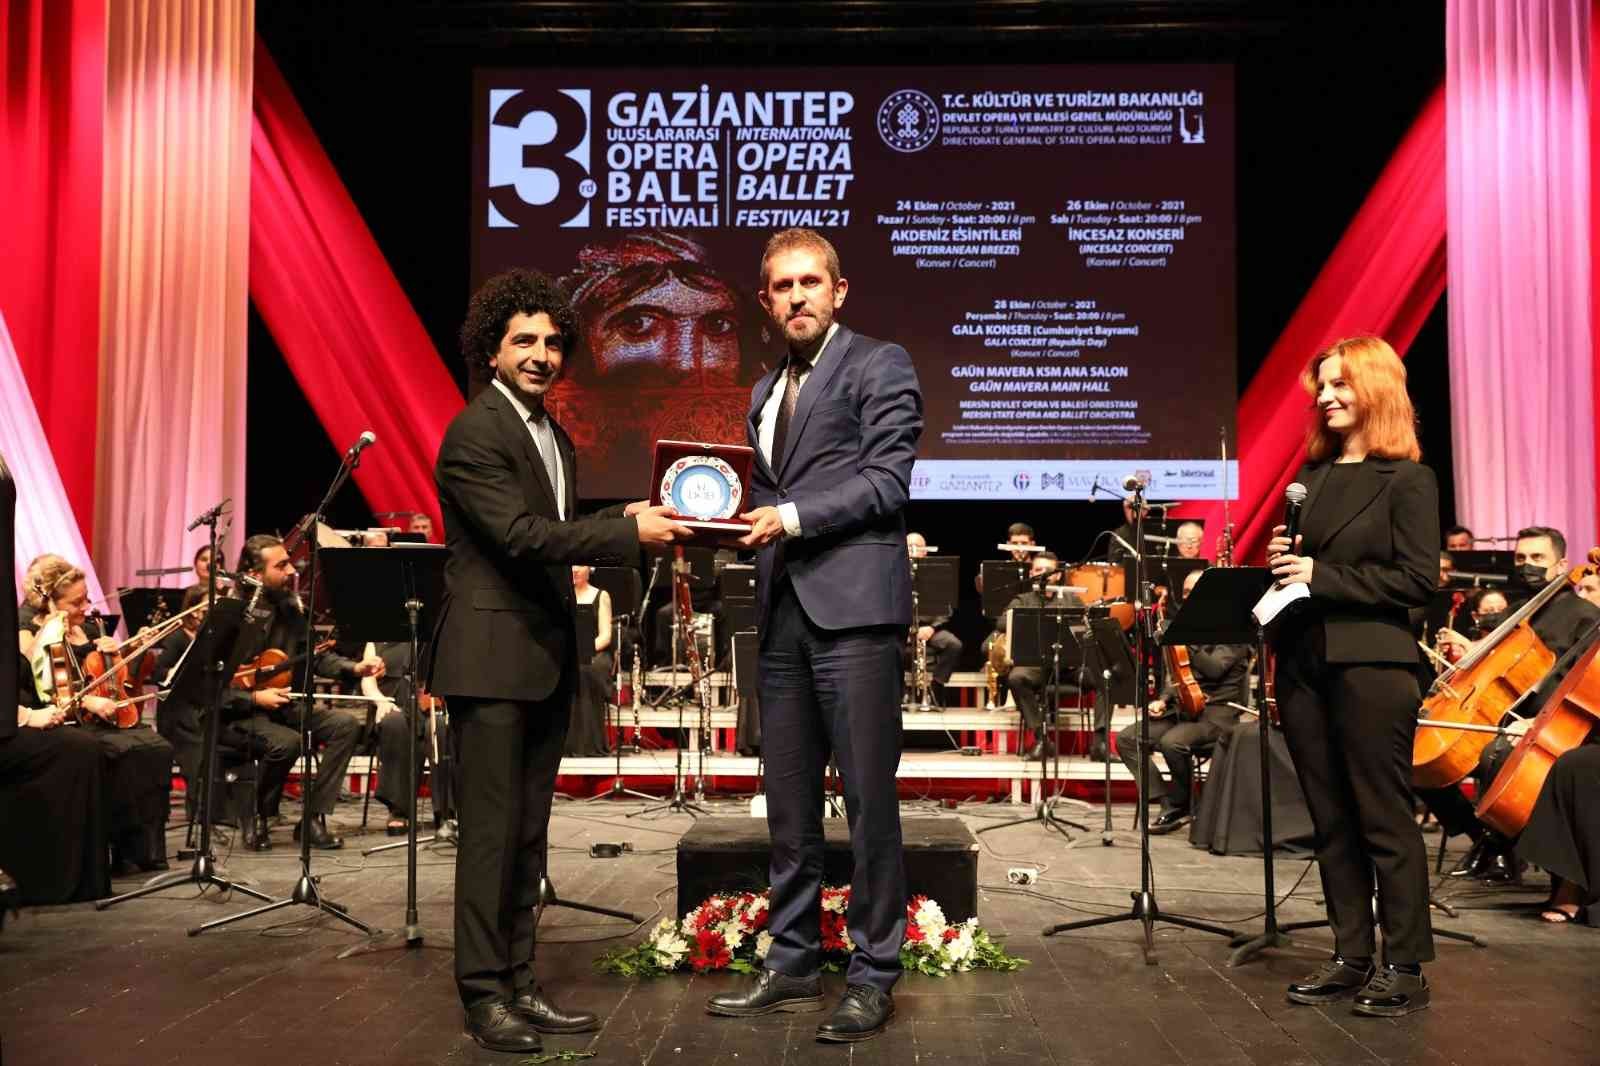 Uluslararası opera ve bale festivaline coşkulu kapanış #gaziantep